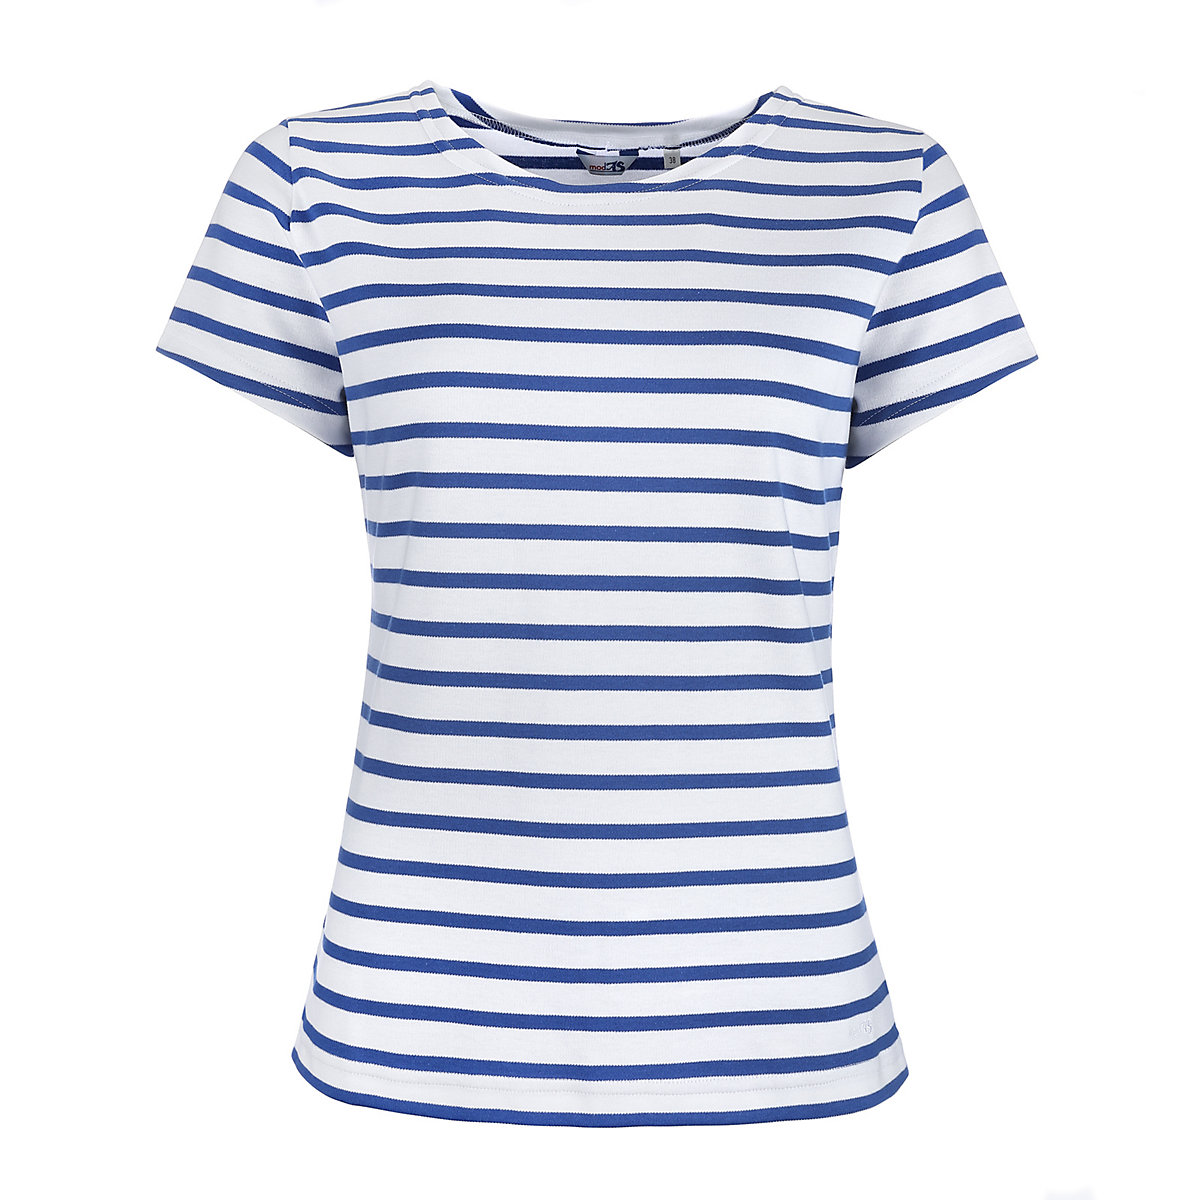 modAS Bretonisches T-Shirt mit Streifen Gestreiftes Kurzarm-Shirt im maritimen Look (72) weiß / royal blau/weiß